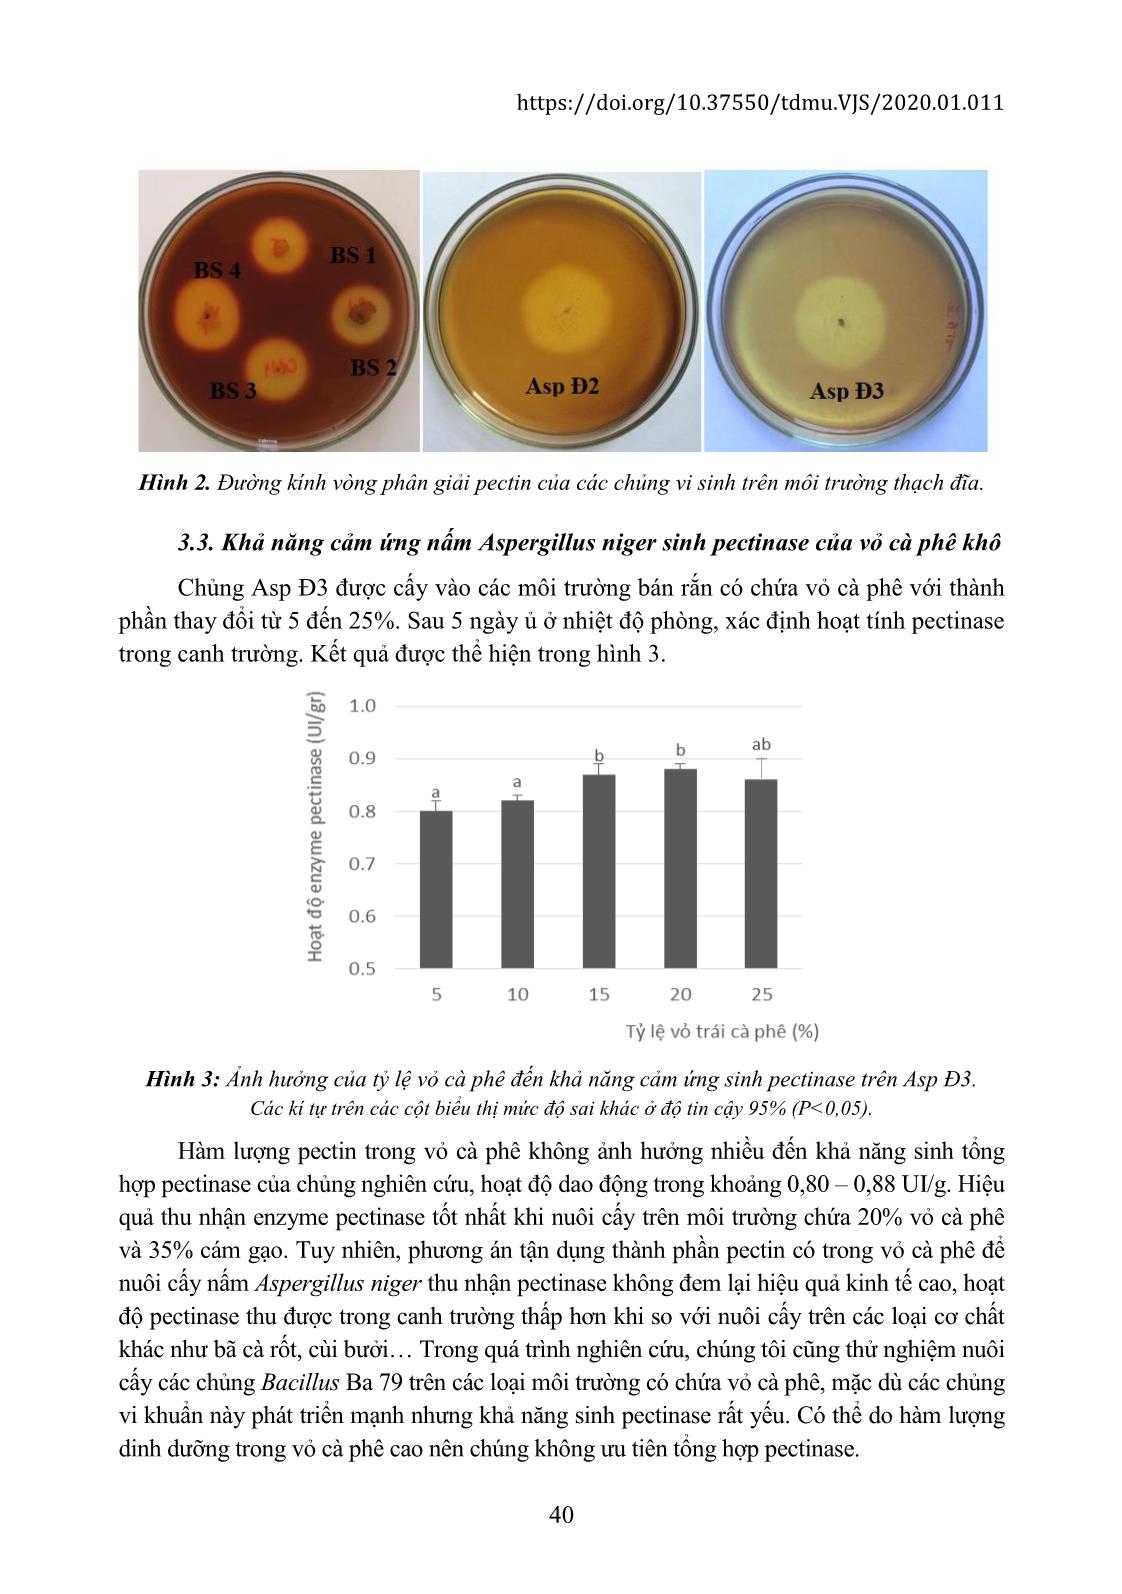 Tận dụng lớp nhớt trái cà phê để nuôi cấy vi sinh thu nhận enzyme pectinase làm trong rượu vang trang 7